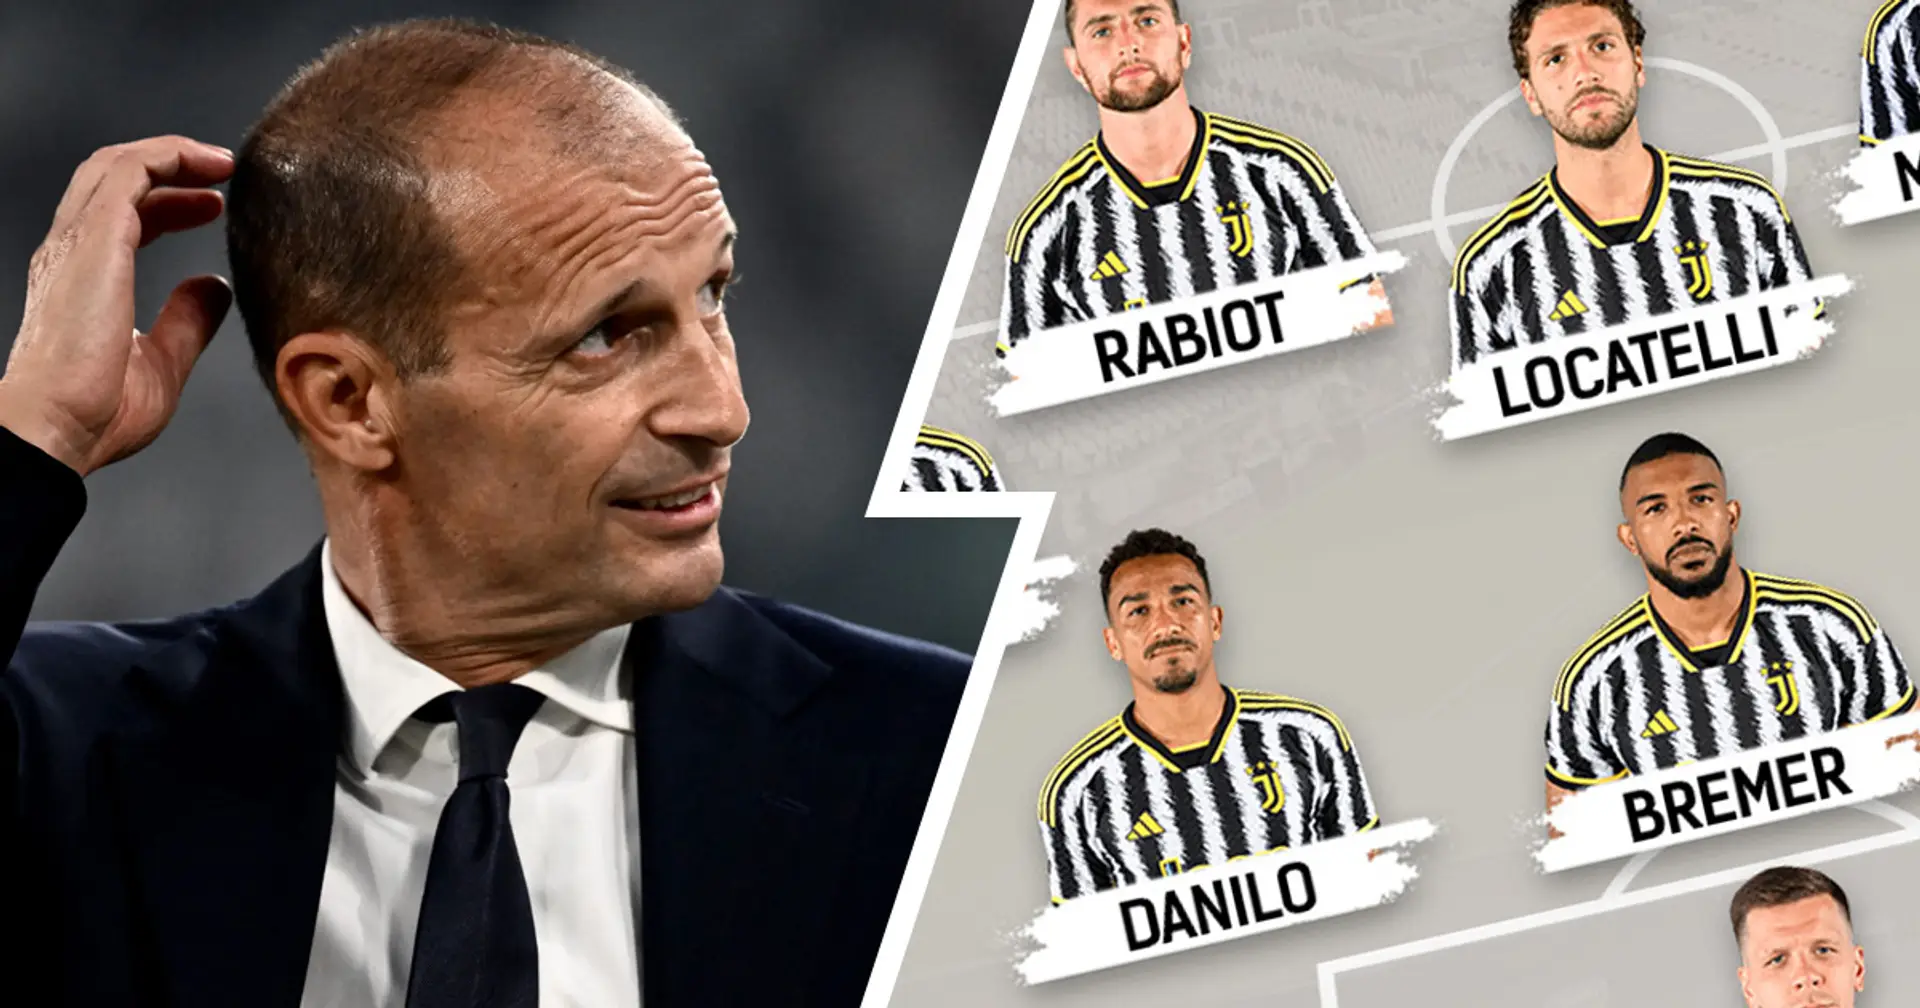 Chiesa scalpita, Rabiot c'è: Inter vs Juventus, probabili formazioni e ultime notizie